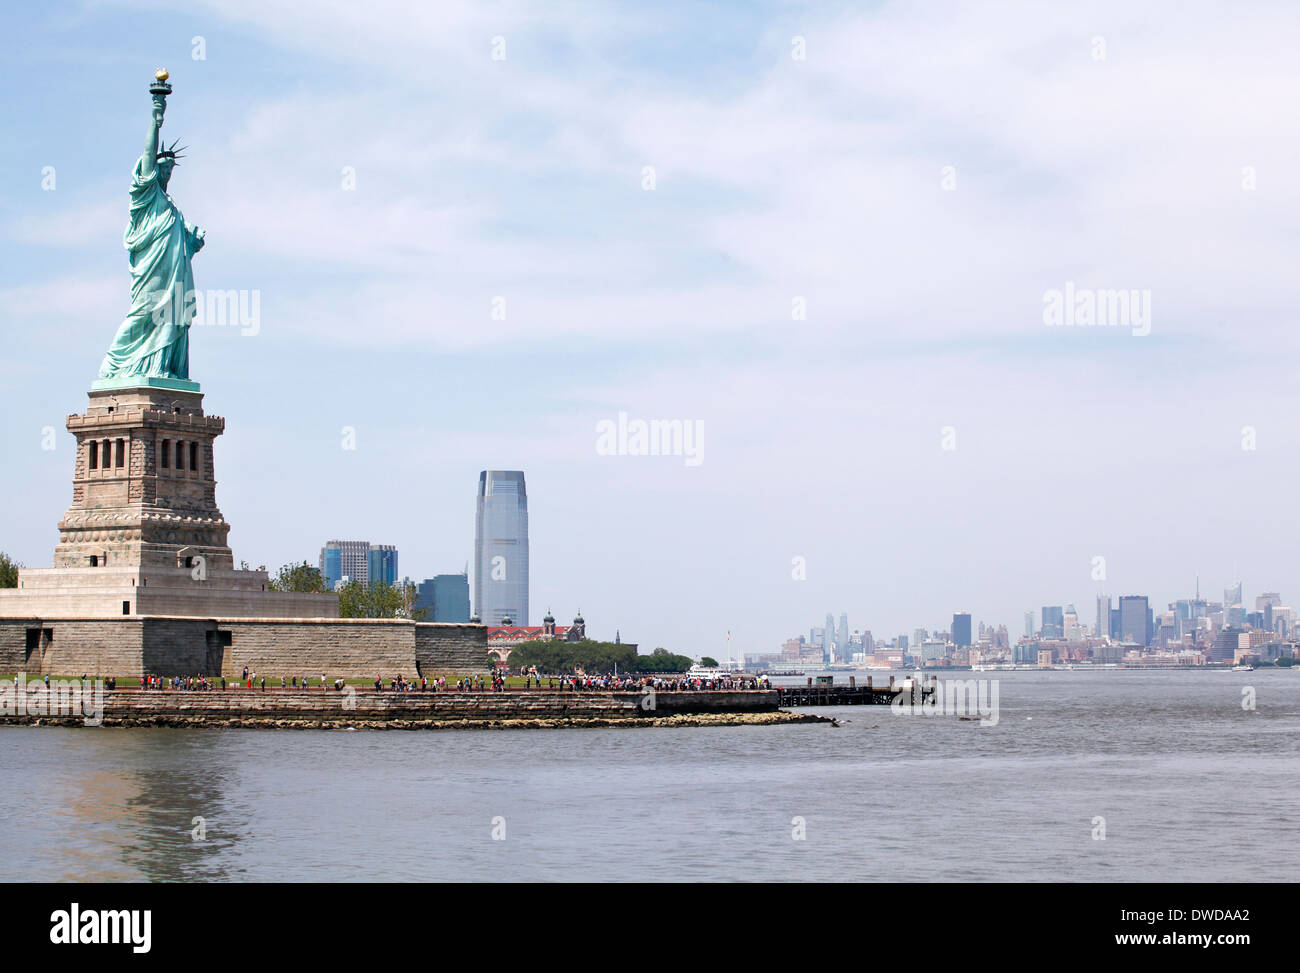 La estatua de la libertad y el horizonte de Nueva York, EE.UU. Foto de stock